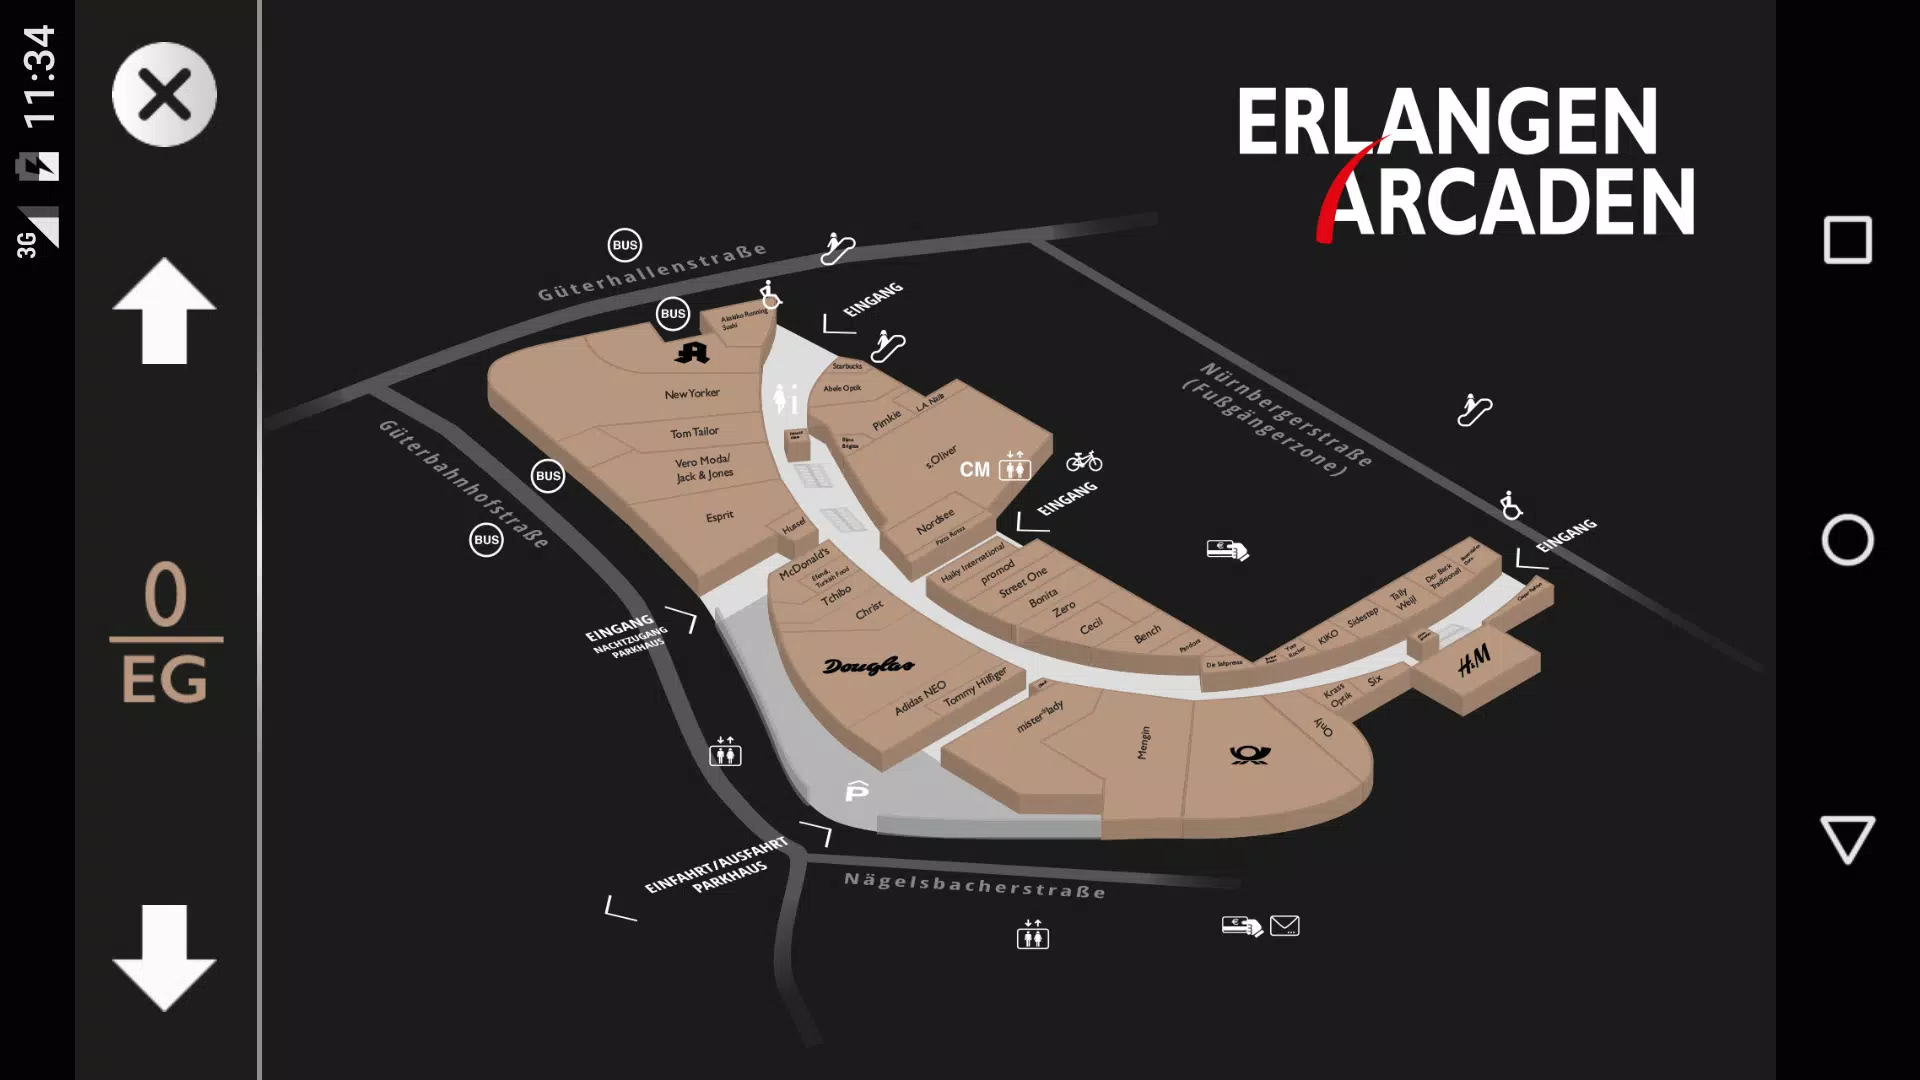 Erlangen Arcaden for Android - APK Download